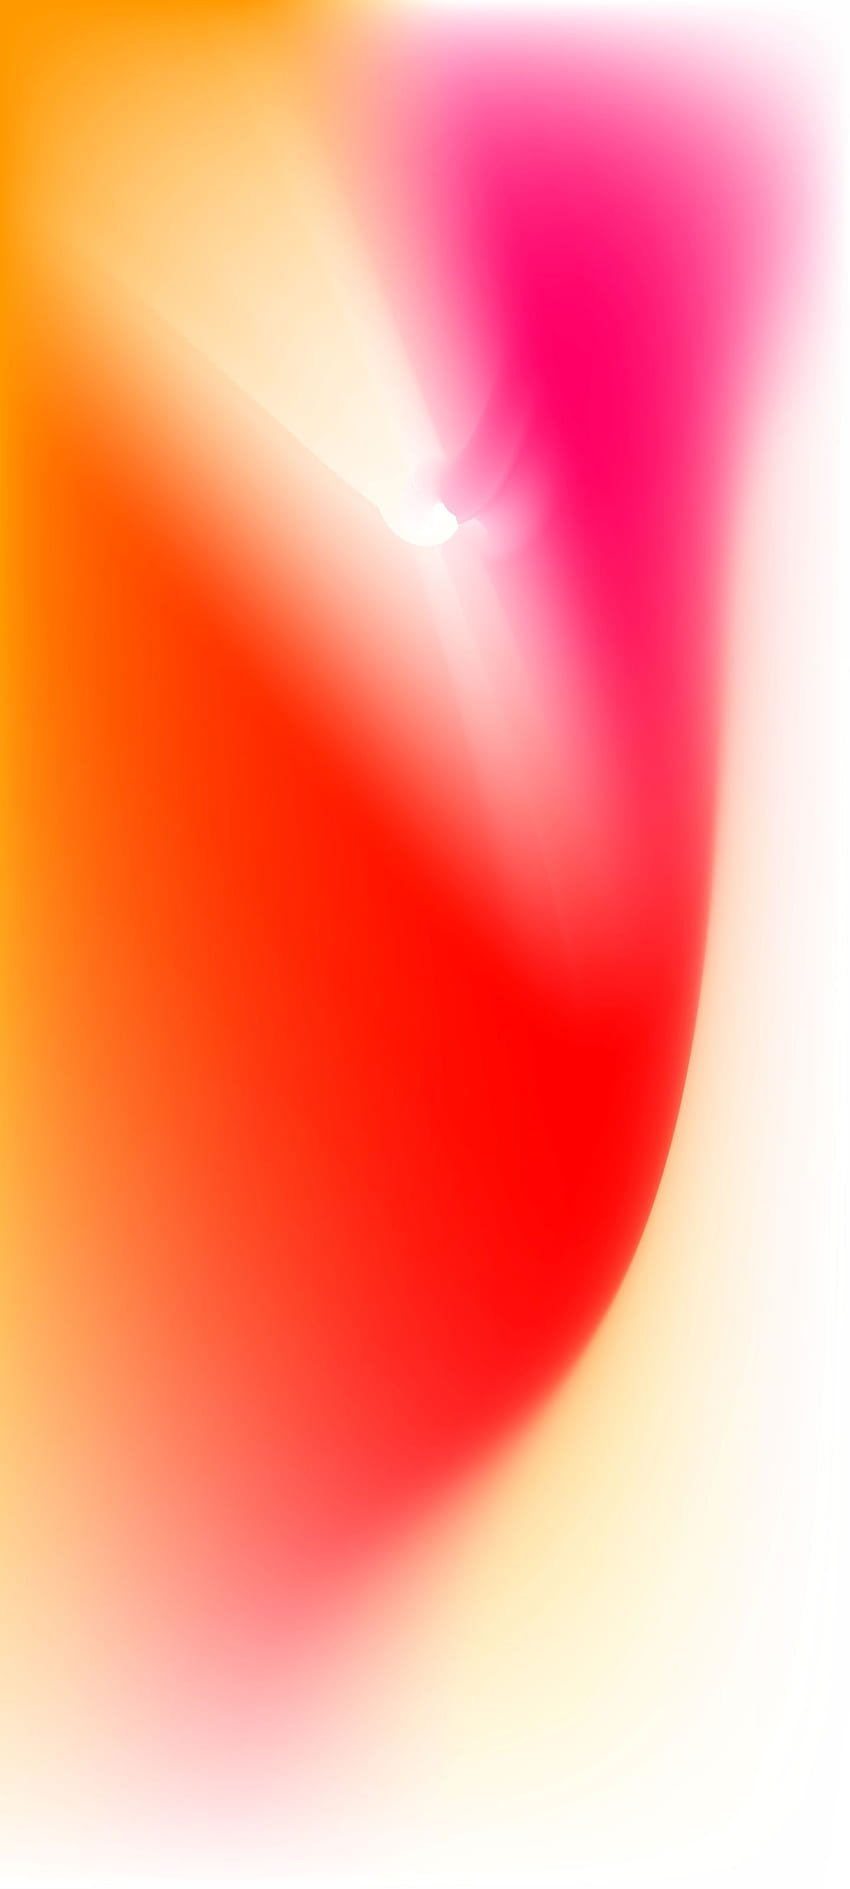 Fließend 2, Electric Blue, Magenta, Pink, Android, Gelb, Winter, Einfach, iOS, Weihnachten, iPhone, Orange, Rot, Minimal, Feiertage, Weiß, Lila HD-Handy-Hintergrundbild